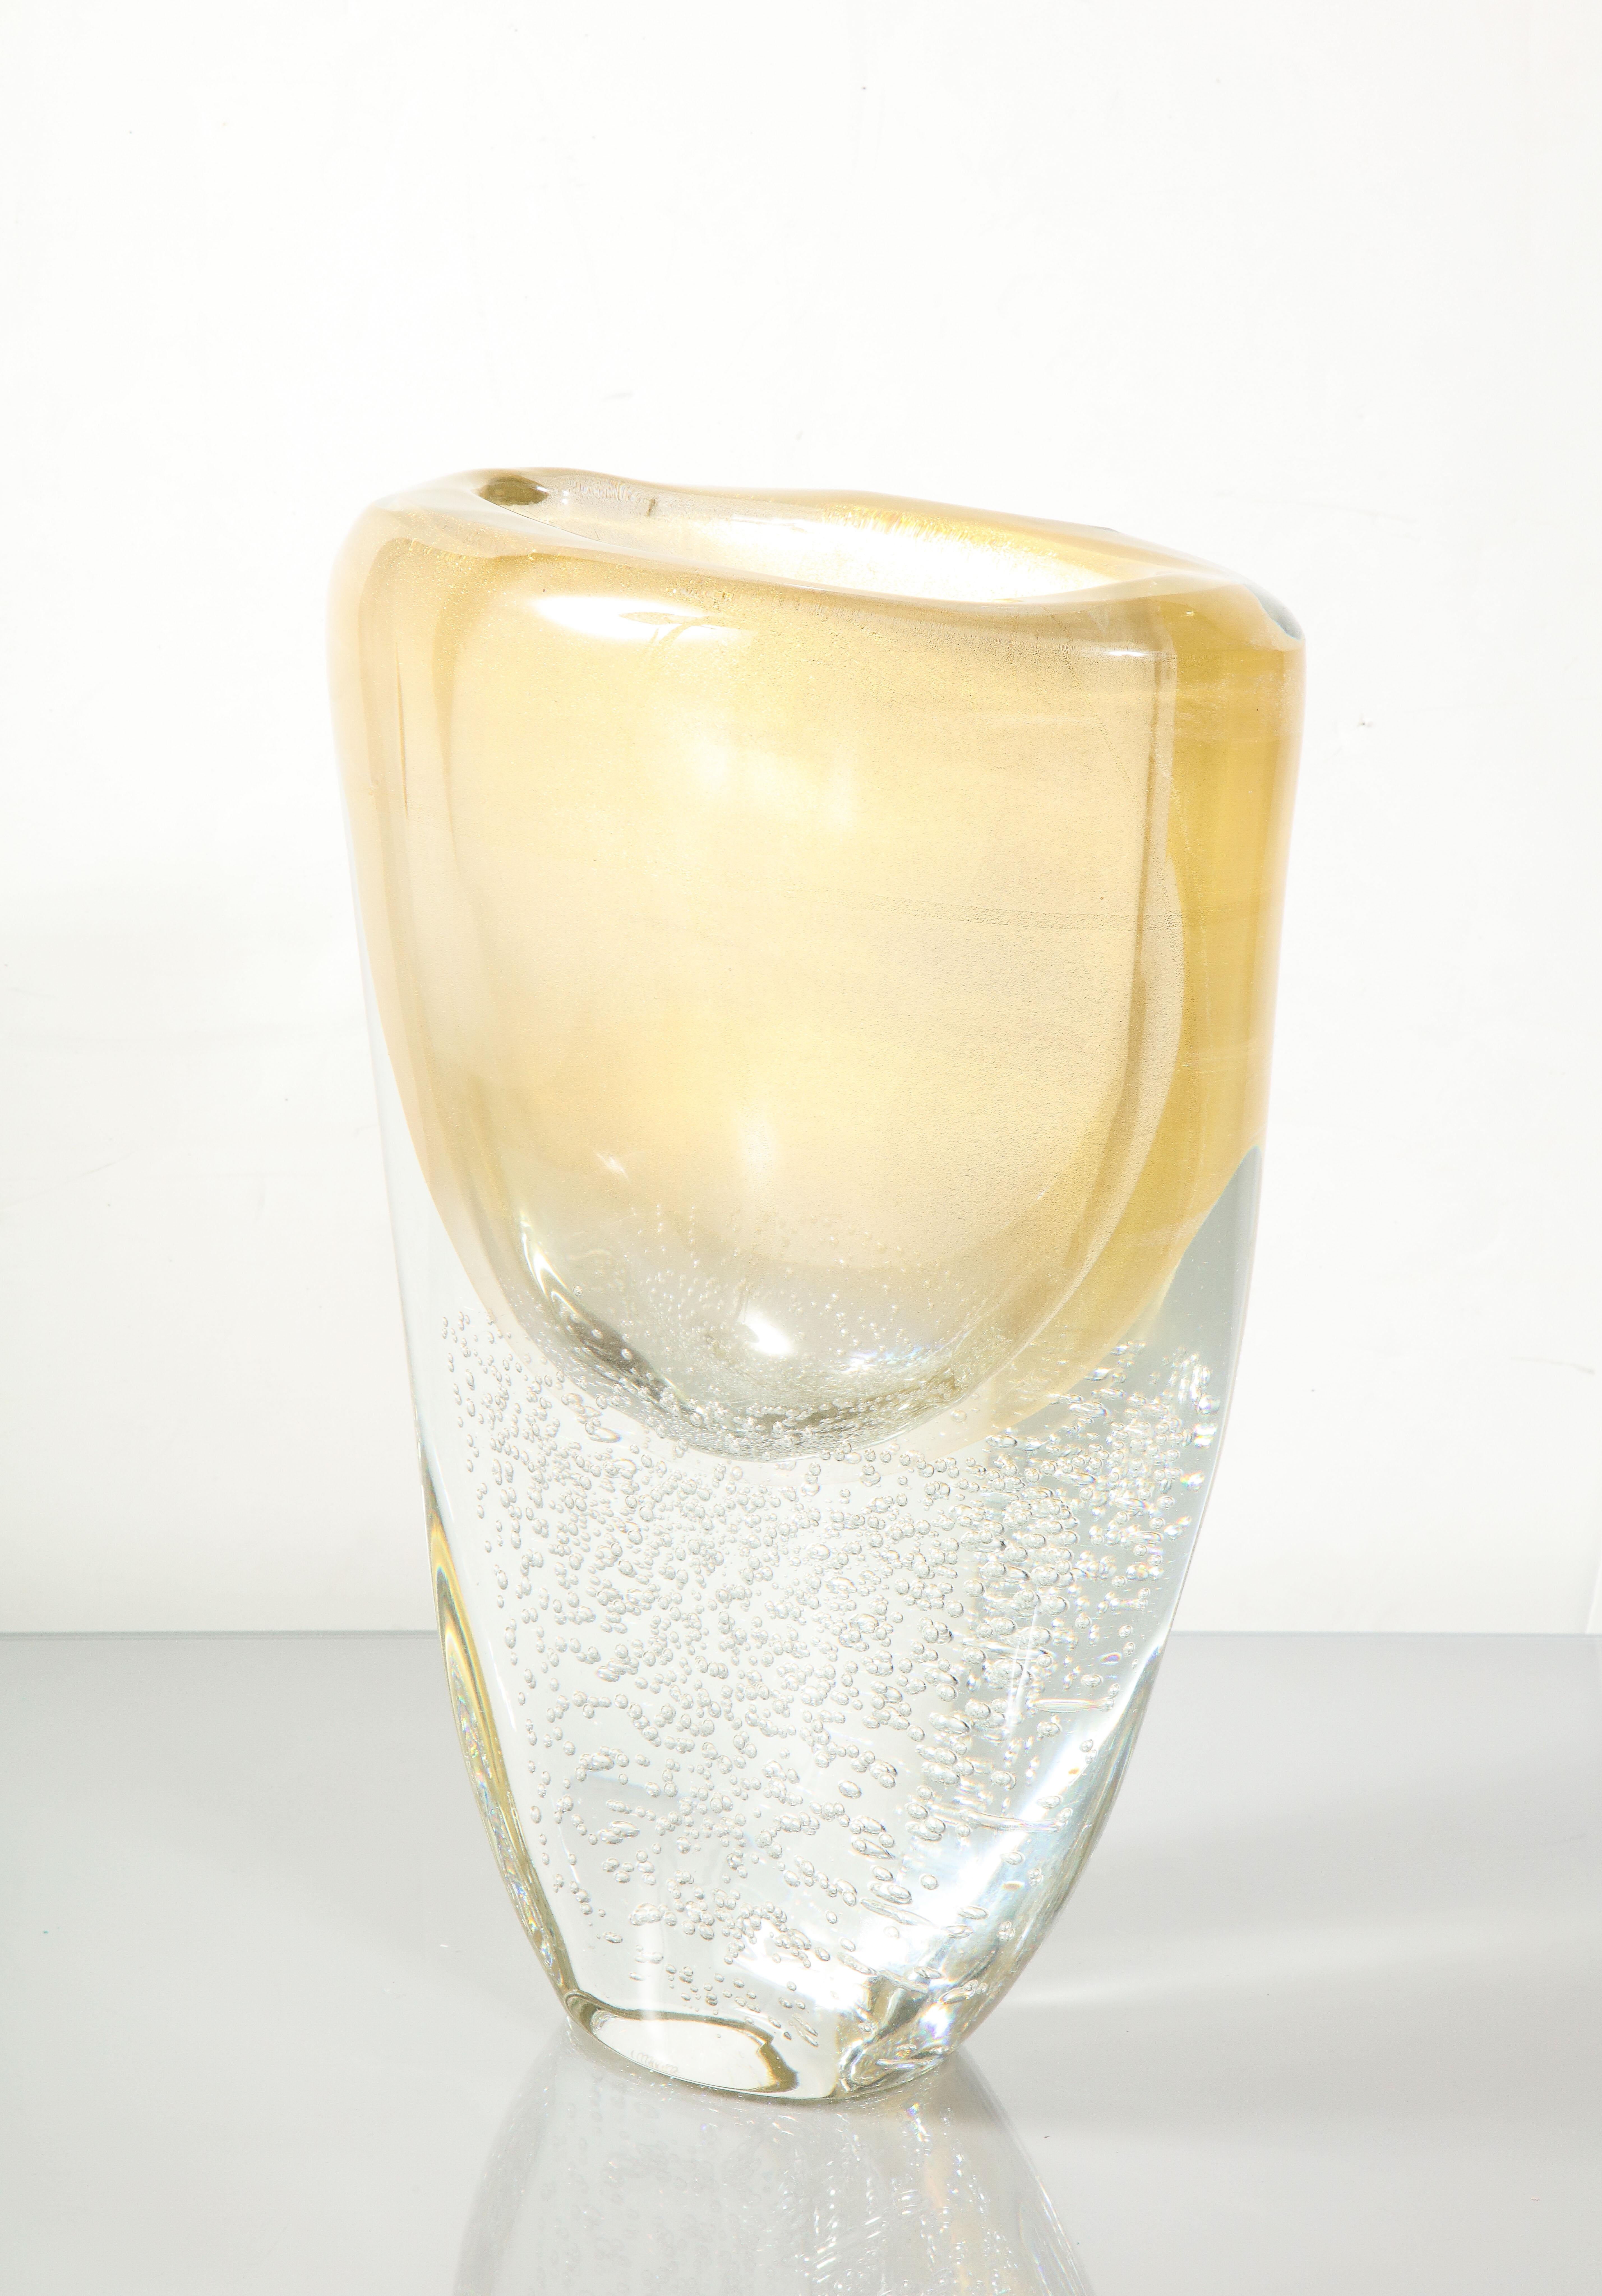 Große Vase aus italienischem Murano-Glas von Sommerso mit Luftbläschen und 24-karätigem Goldüberfang. Größe, Form und Farbe jeder Vase können aufgrund der Natur des mundgeblasenen, handgefertigten Prozesses leicht variieren. Die Verfügbarkeit dieses